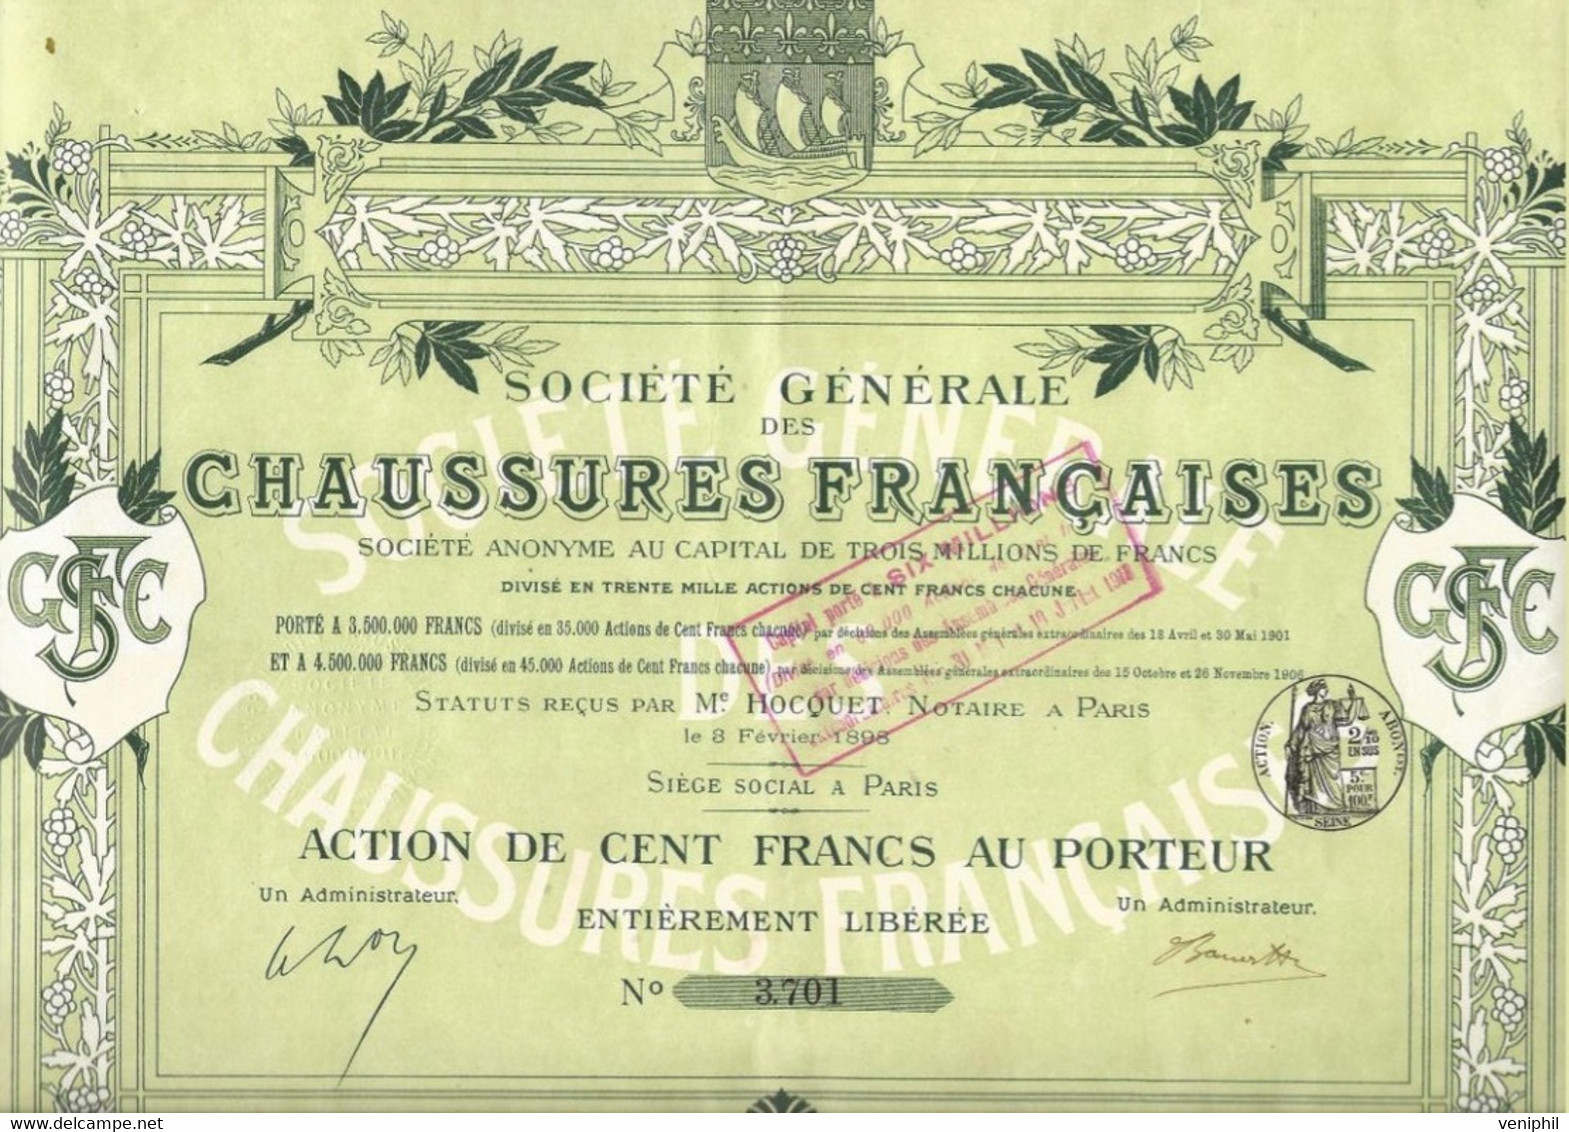 SOCIETE GENERALE DES CHAUSSURES FRANCAISES - ACTION DE CENT FRANCS - ANNEE 1898 - Textiles